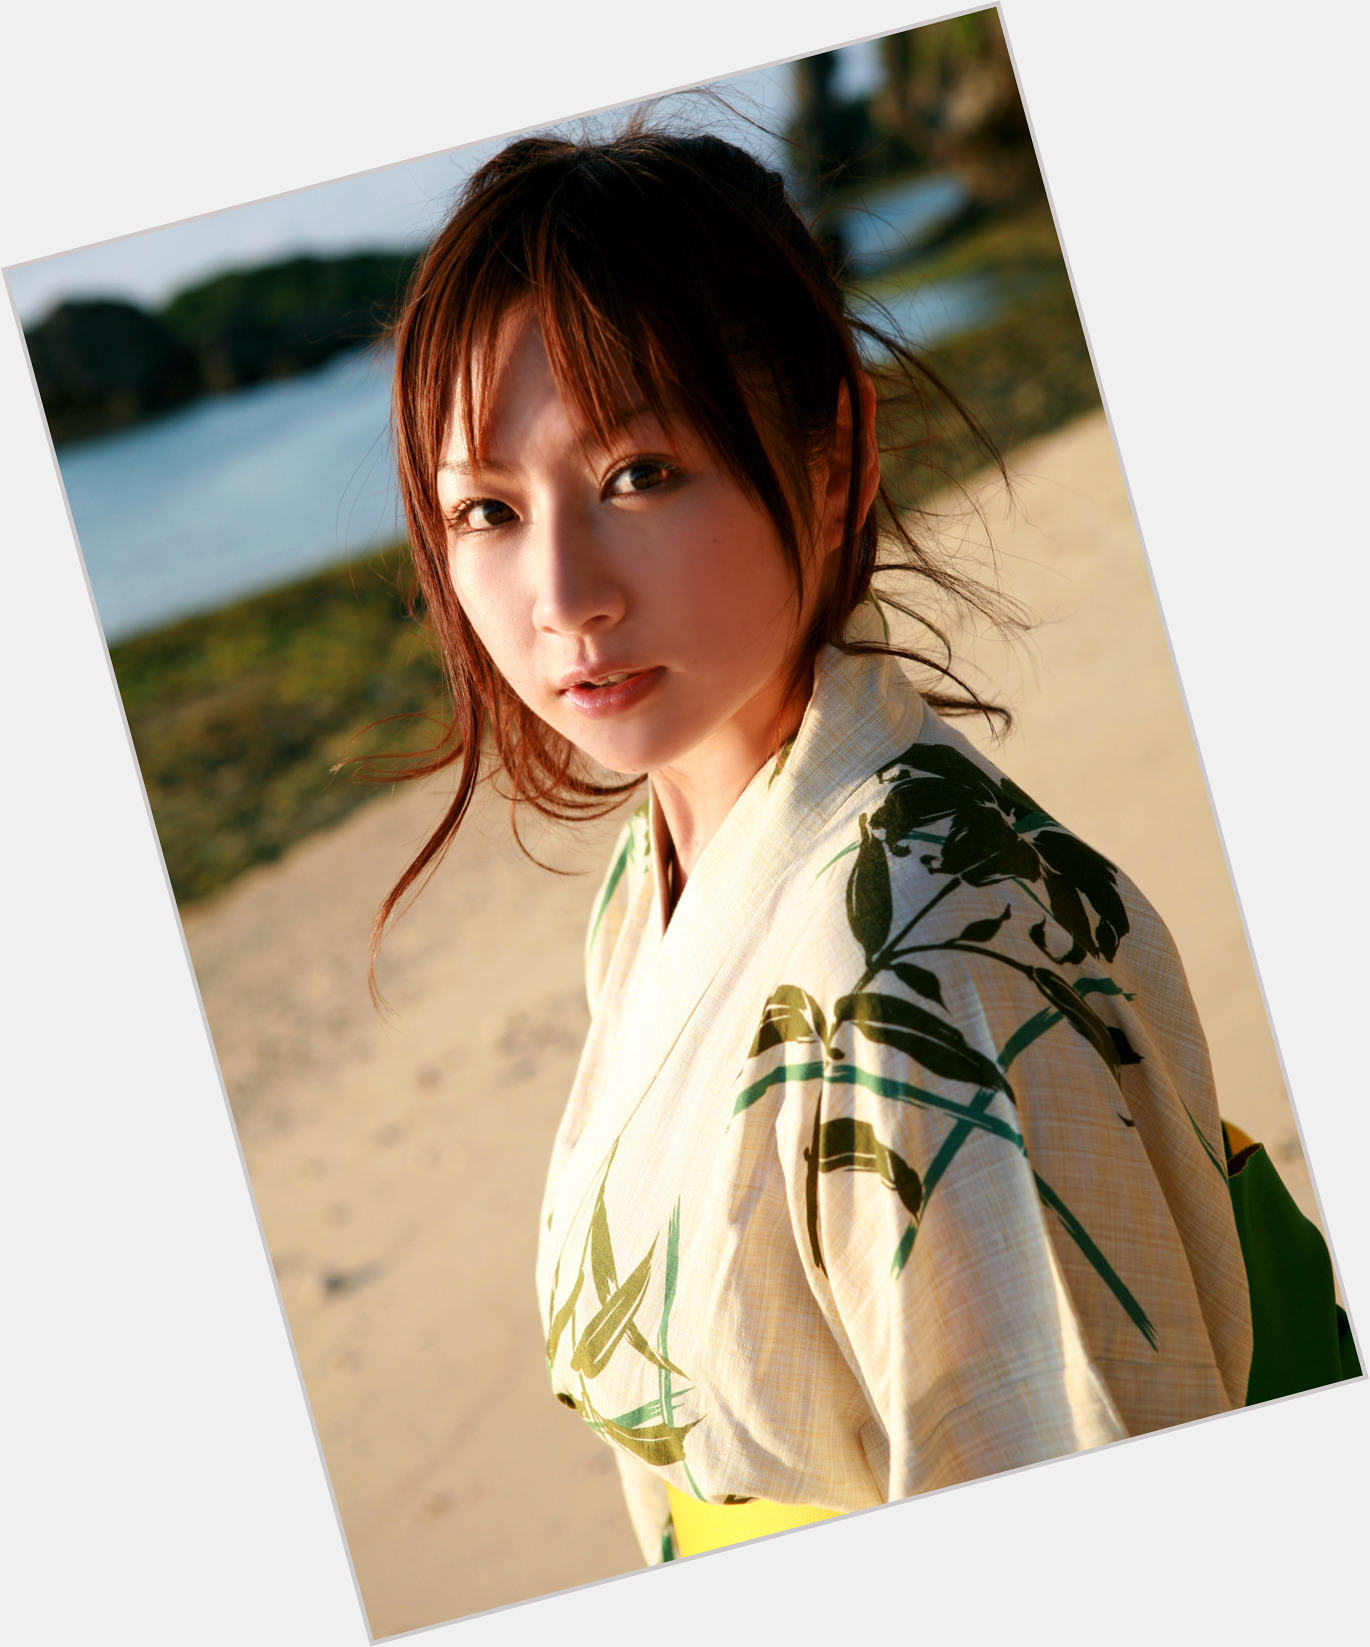 <a href="/hot-women/yuzuki-aikawa/where-dating-news-photos">Yuzuki Aikawa</a>  